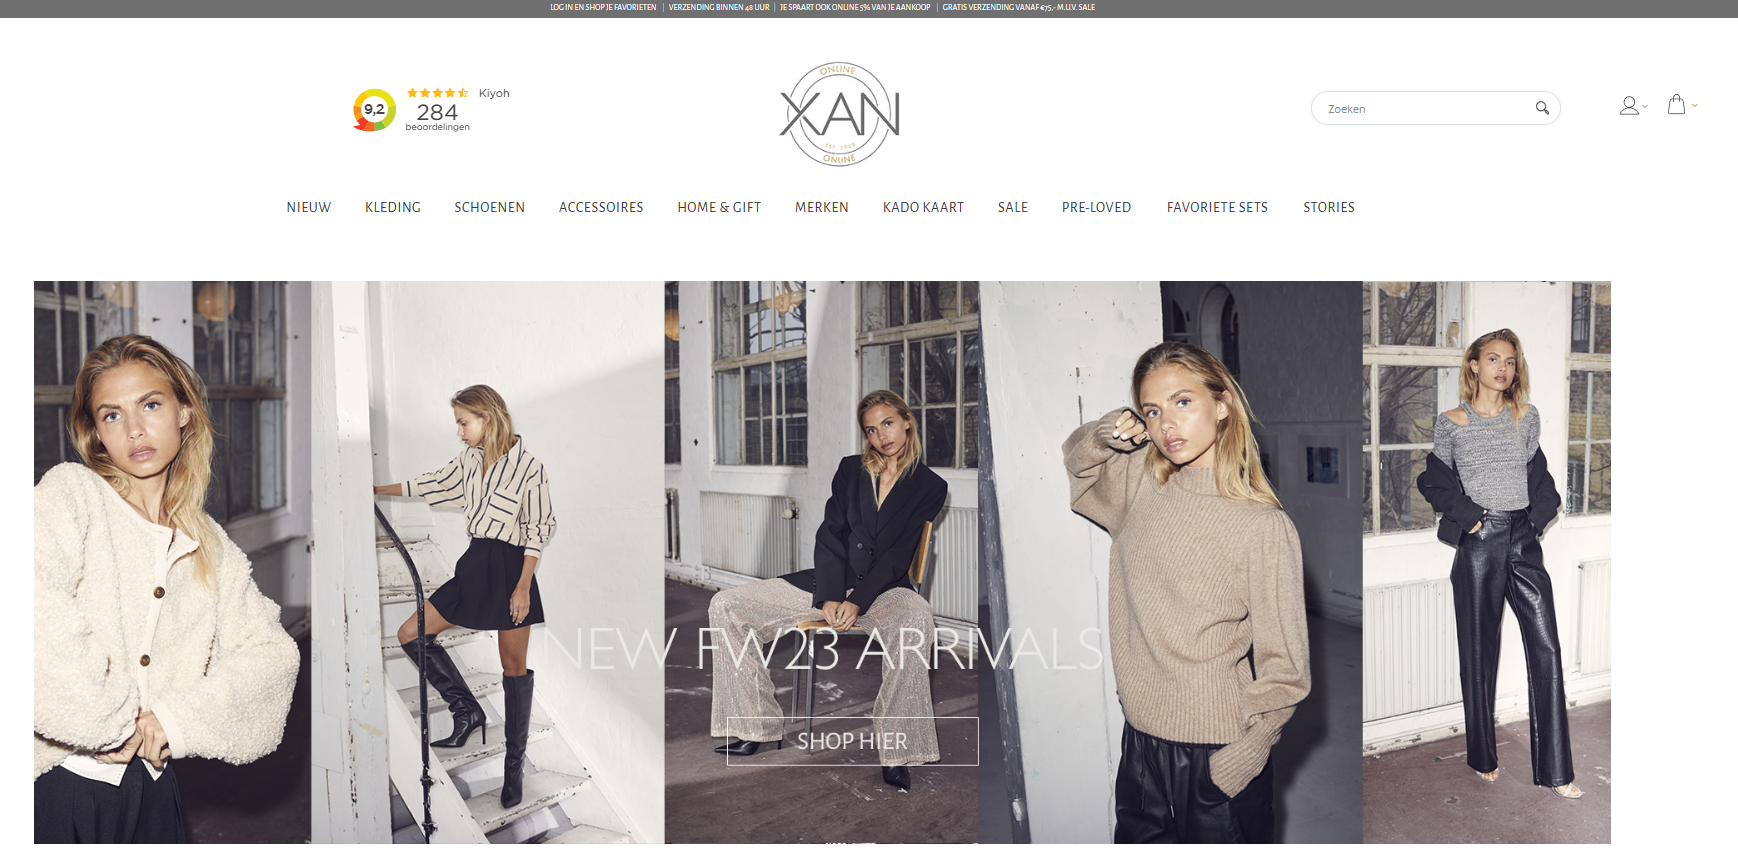 Xan woman webshop